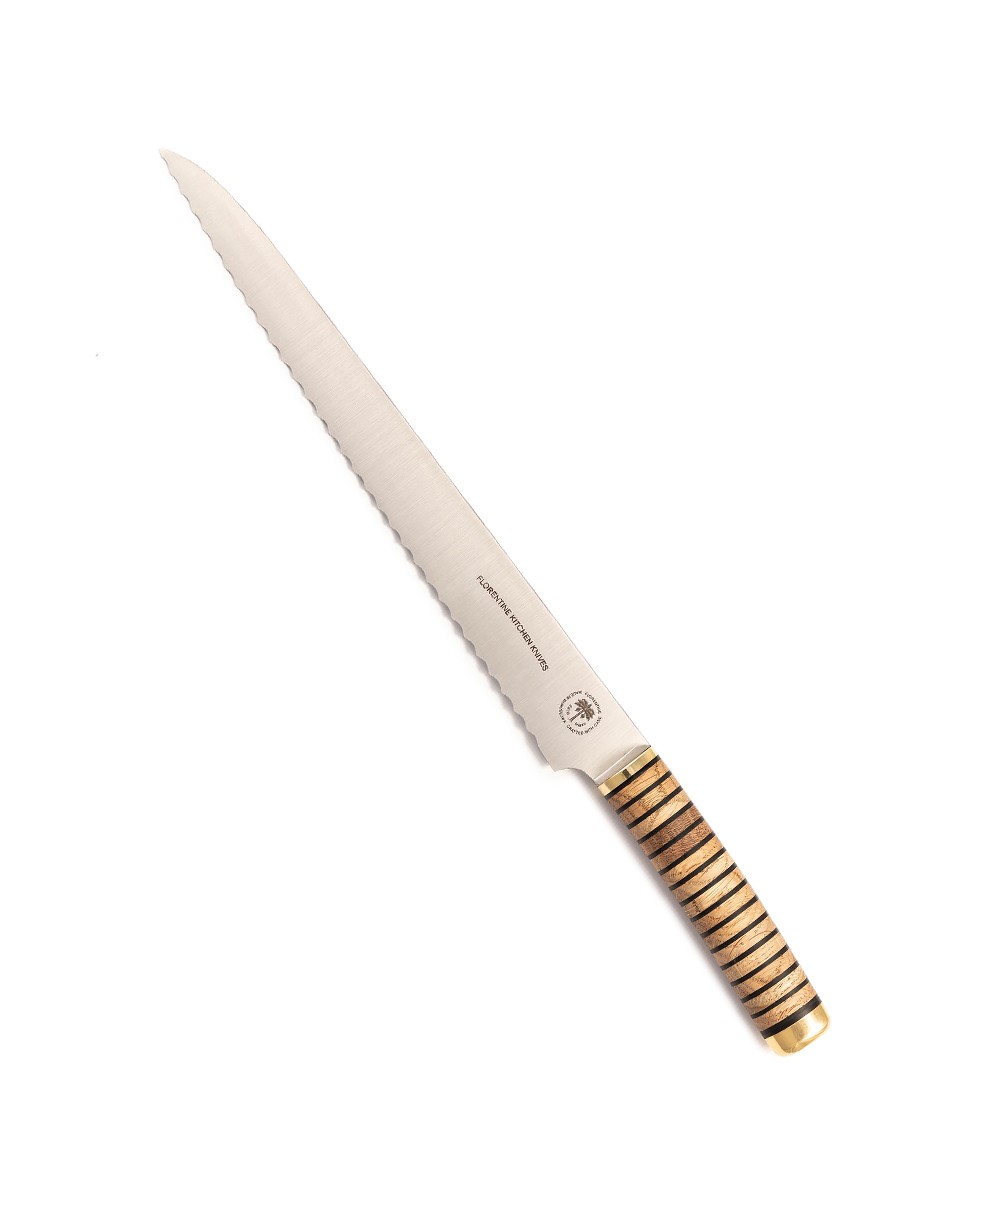 Produktbild des Florentine Brotmessers  in wood von Florentine Kitchen Knives im RAUM concept store 